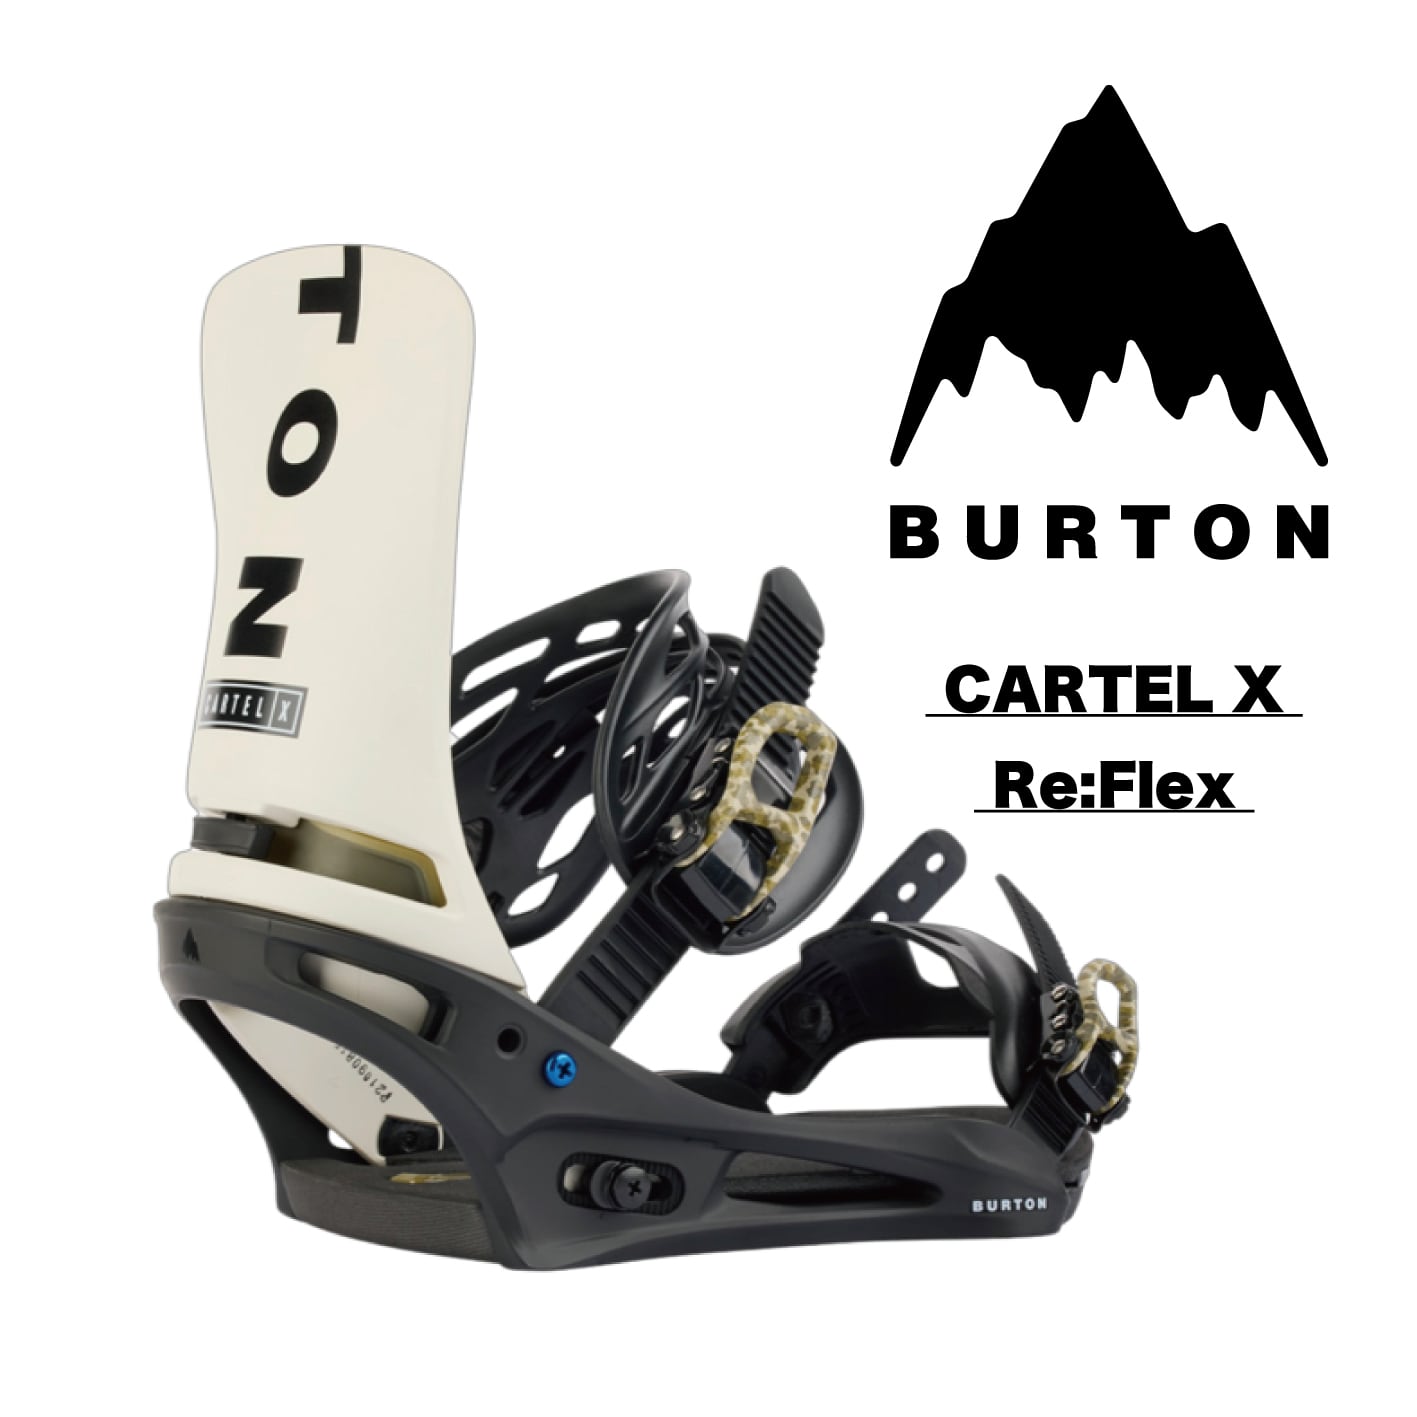 22-23 BURTON『 CARTEL X Re:Flex 』スノーボード バインディング ビンディング binding バートン カーテルエックス  リフレックス カービング テクニカル スノーボードテクニカル テク選 パウダー 地形遊び パーク メンズ レディース snowboardshop  MDS